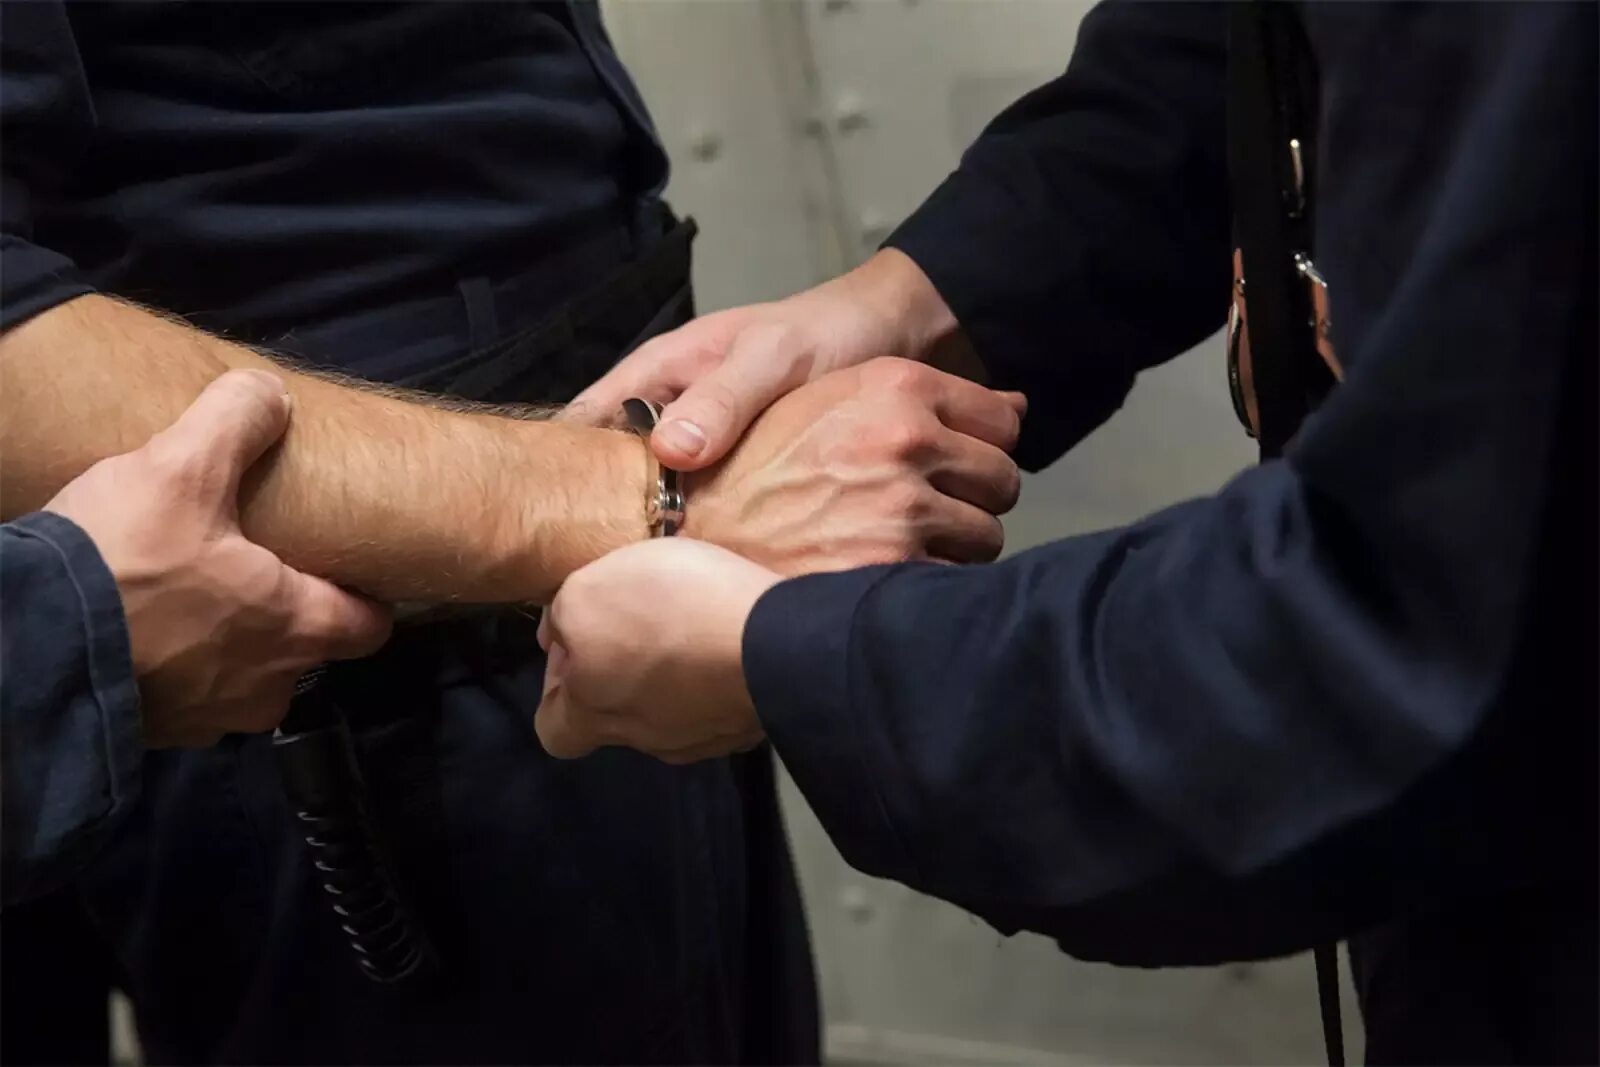 Полиция наручники. Полицейский надевает наручники. Задержанный в наручниках. Полиция наручники задержание. Тема арест